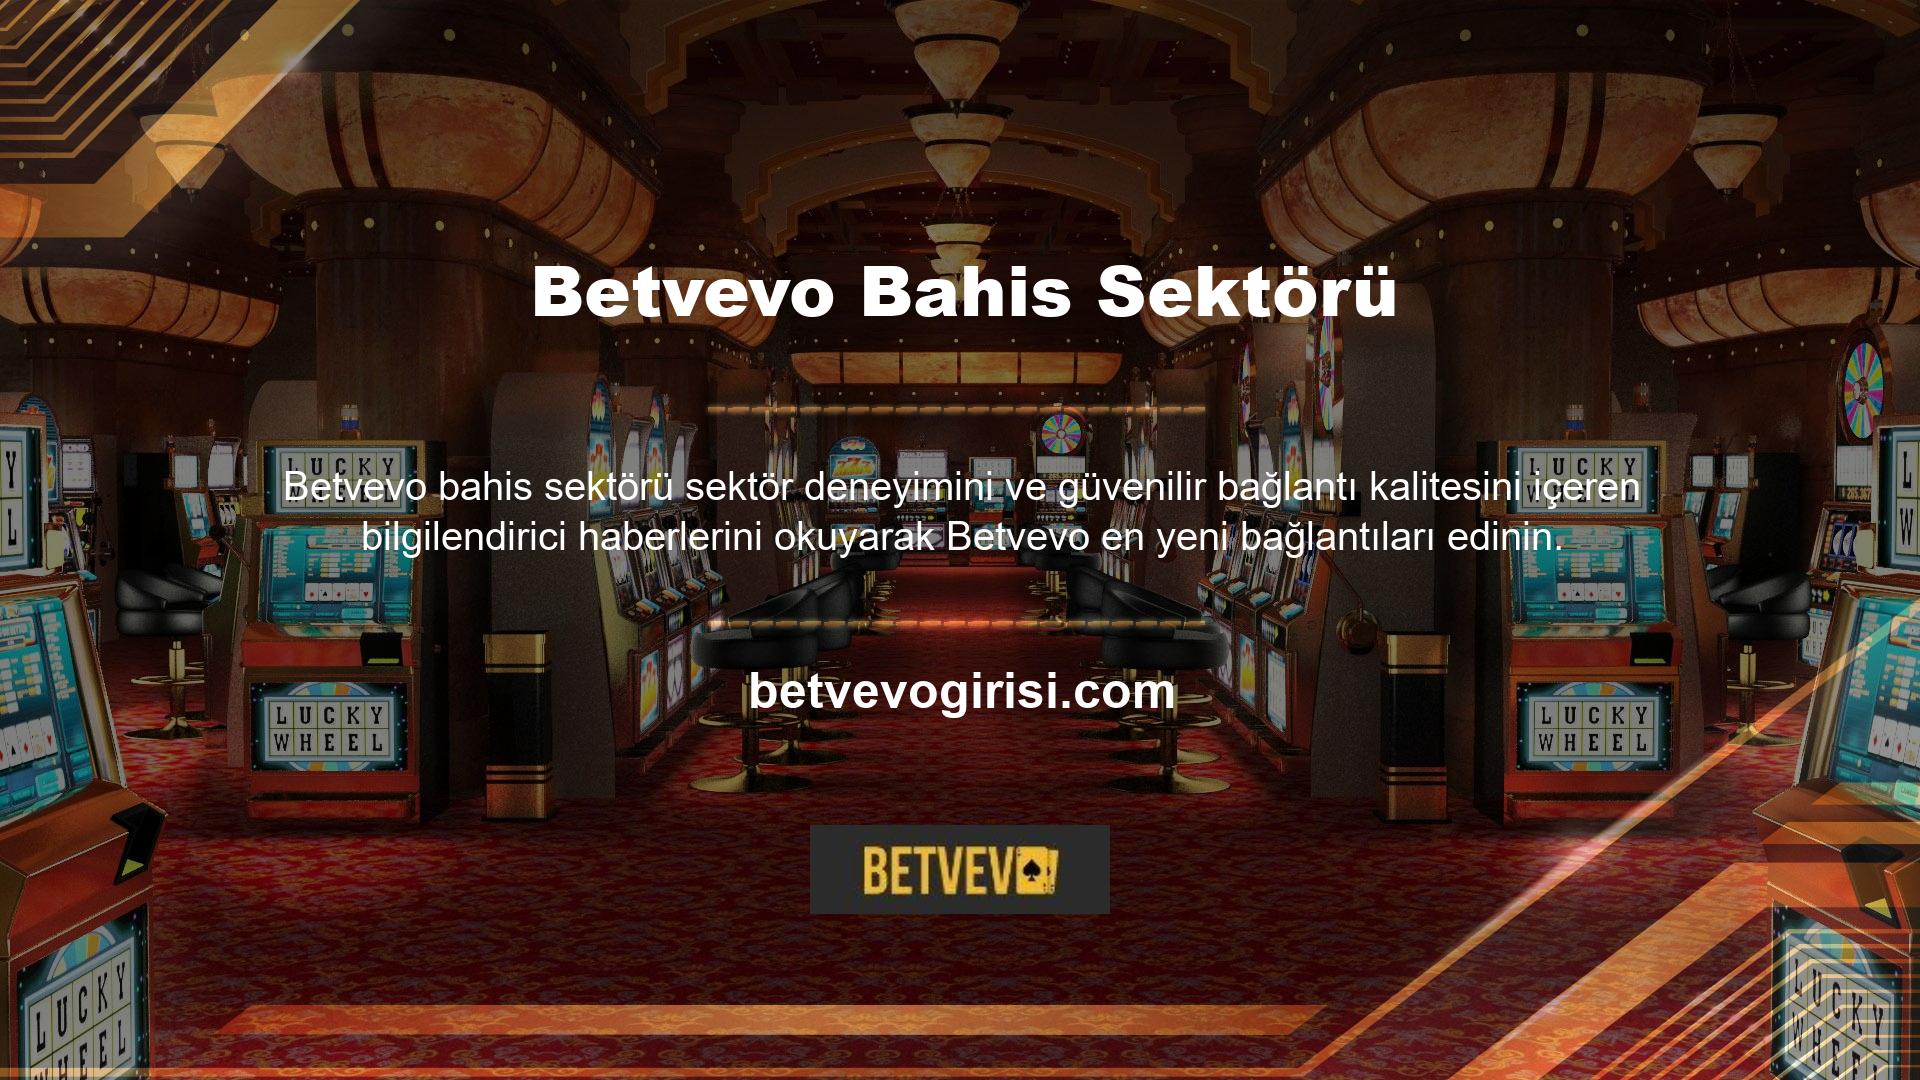 Sondaki giriş adresi Betvevo olarak tanımlanır